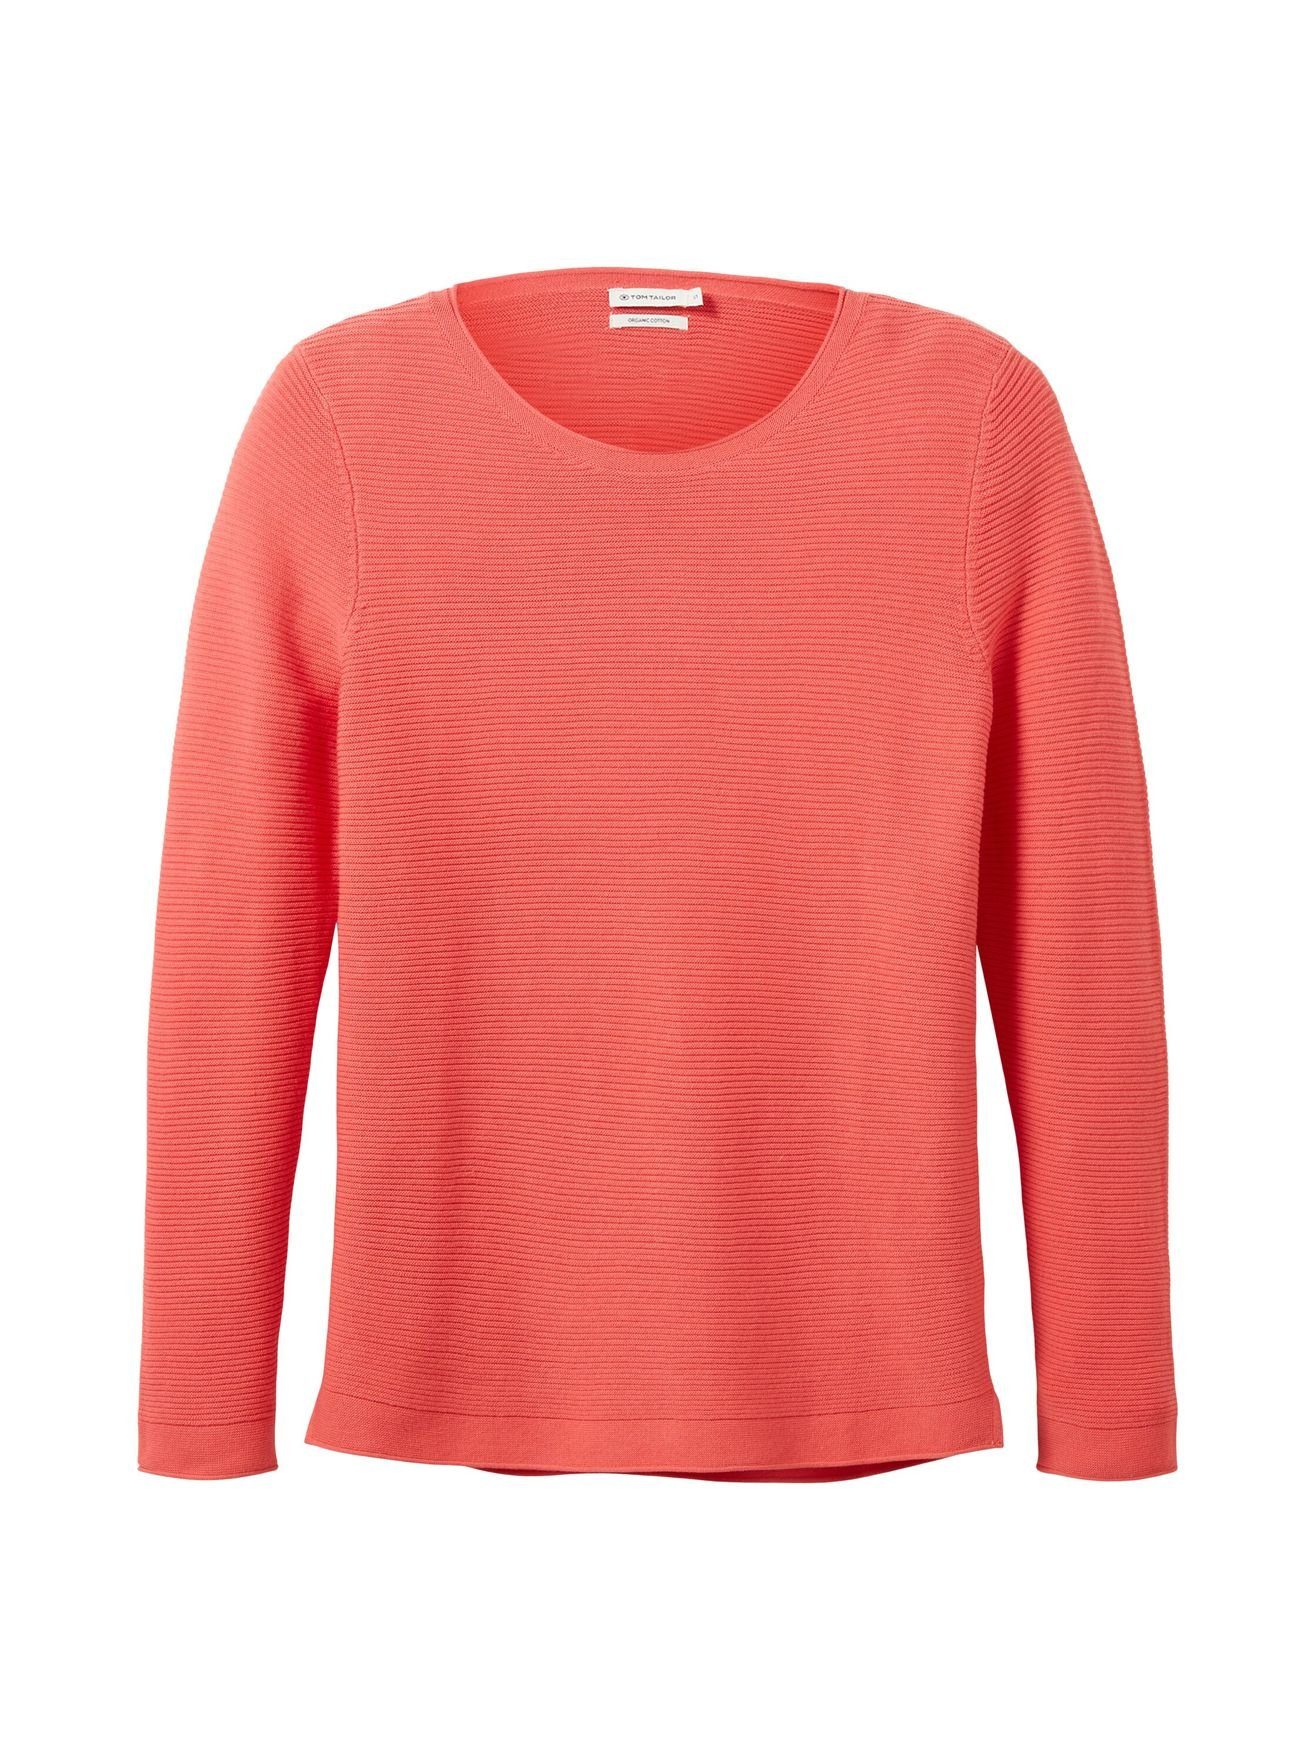 Orange Strickpullover Baumwolle TOM Rundhals aus in Neon Langarm Sweater 4656 OTTOMAN TAILOR Strickpullover